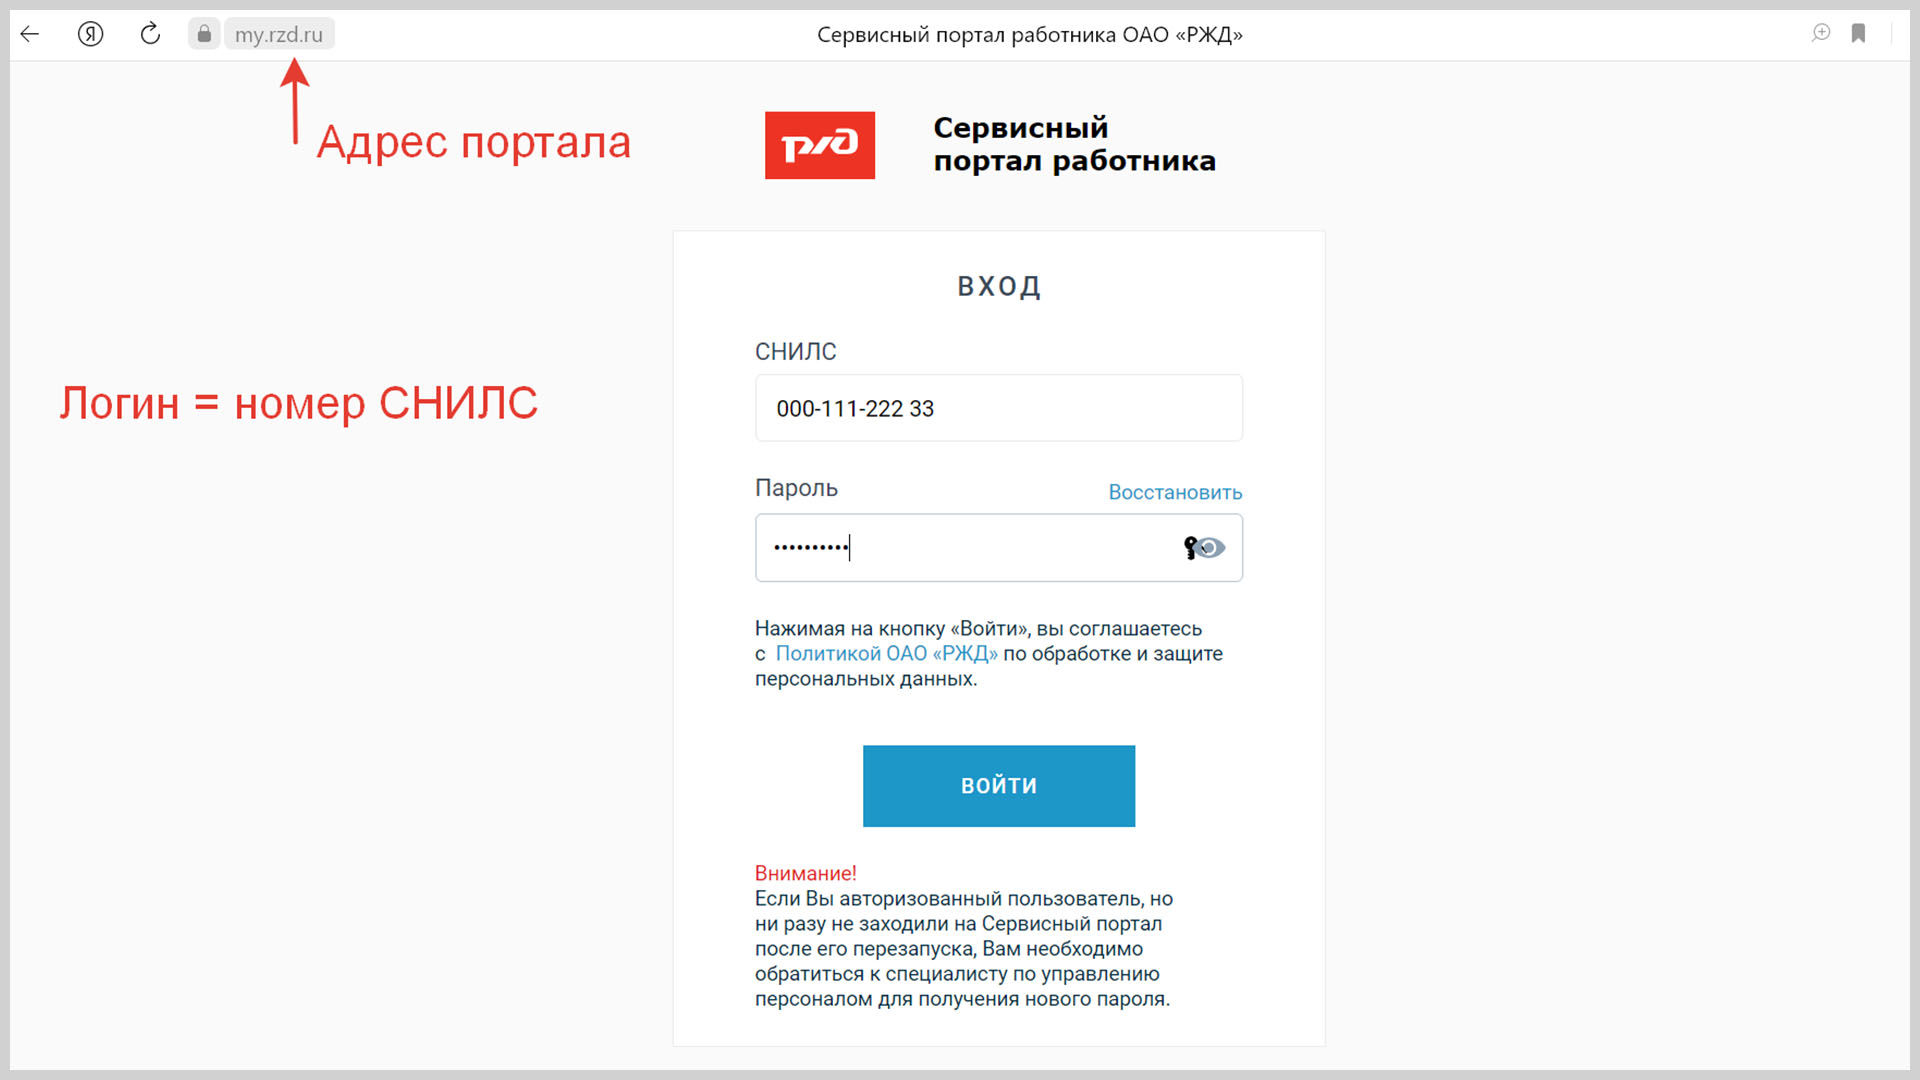 Скриншот страницы входа в сервисный портал работника РЖД.